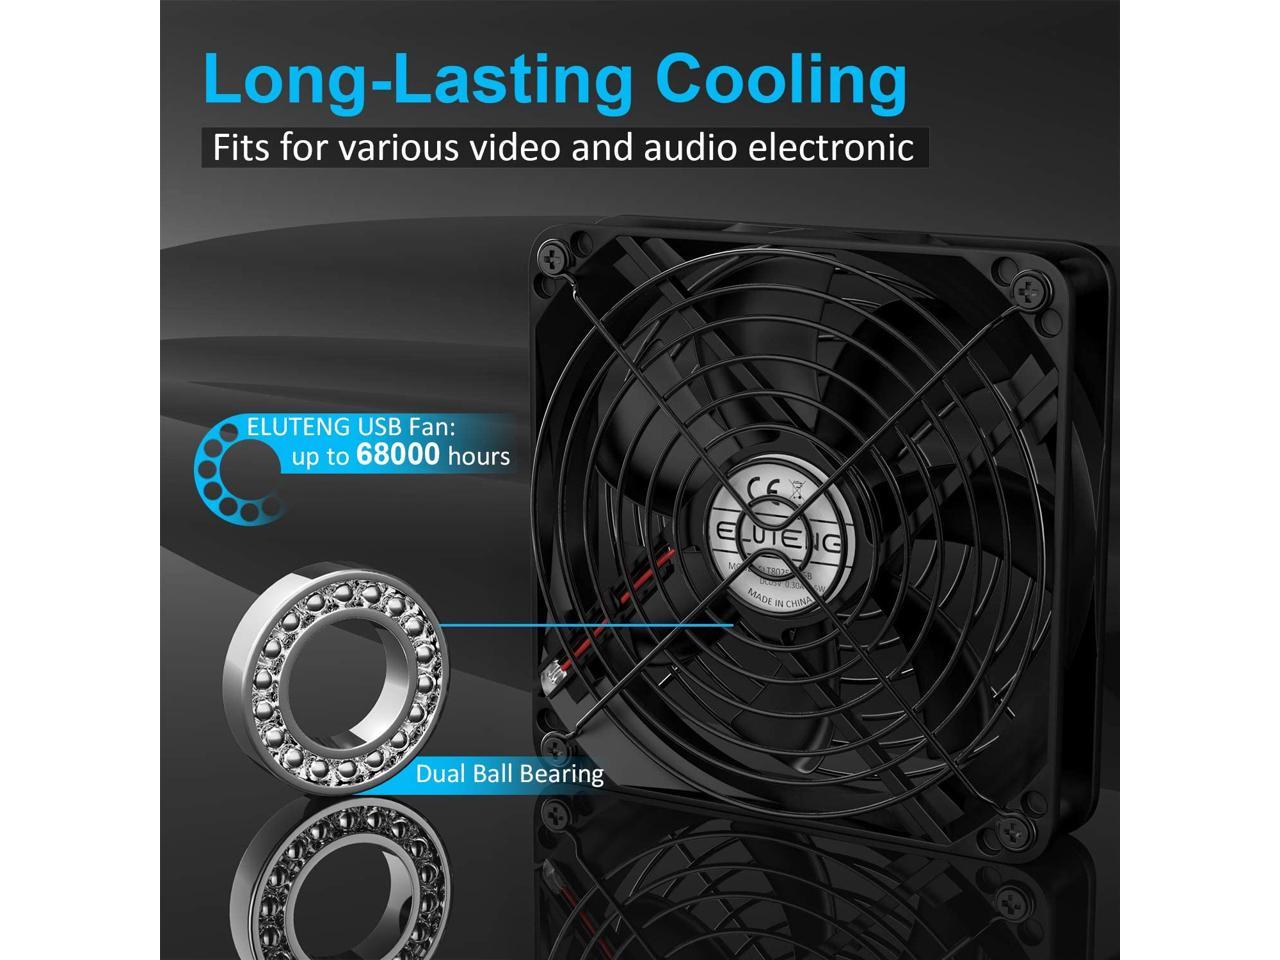 ELUTENG Ventilateur 120mm Double 2 in 1 USB Fan Grille Ventilateur de PC 5V Fan Cooler Refroidisseur 12cm Cooling pour PS4 PS3 Xbox Routeur Mini PC 